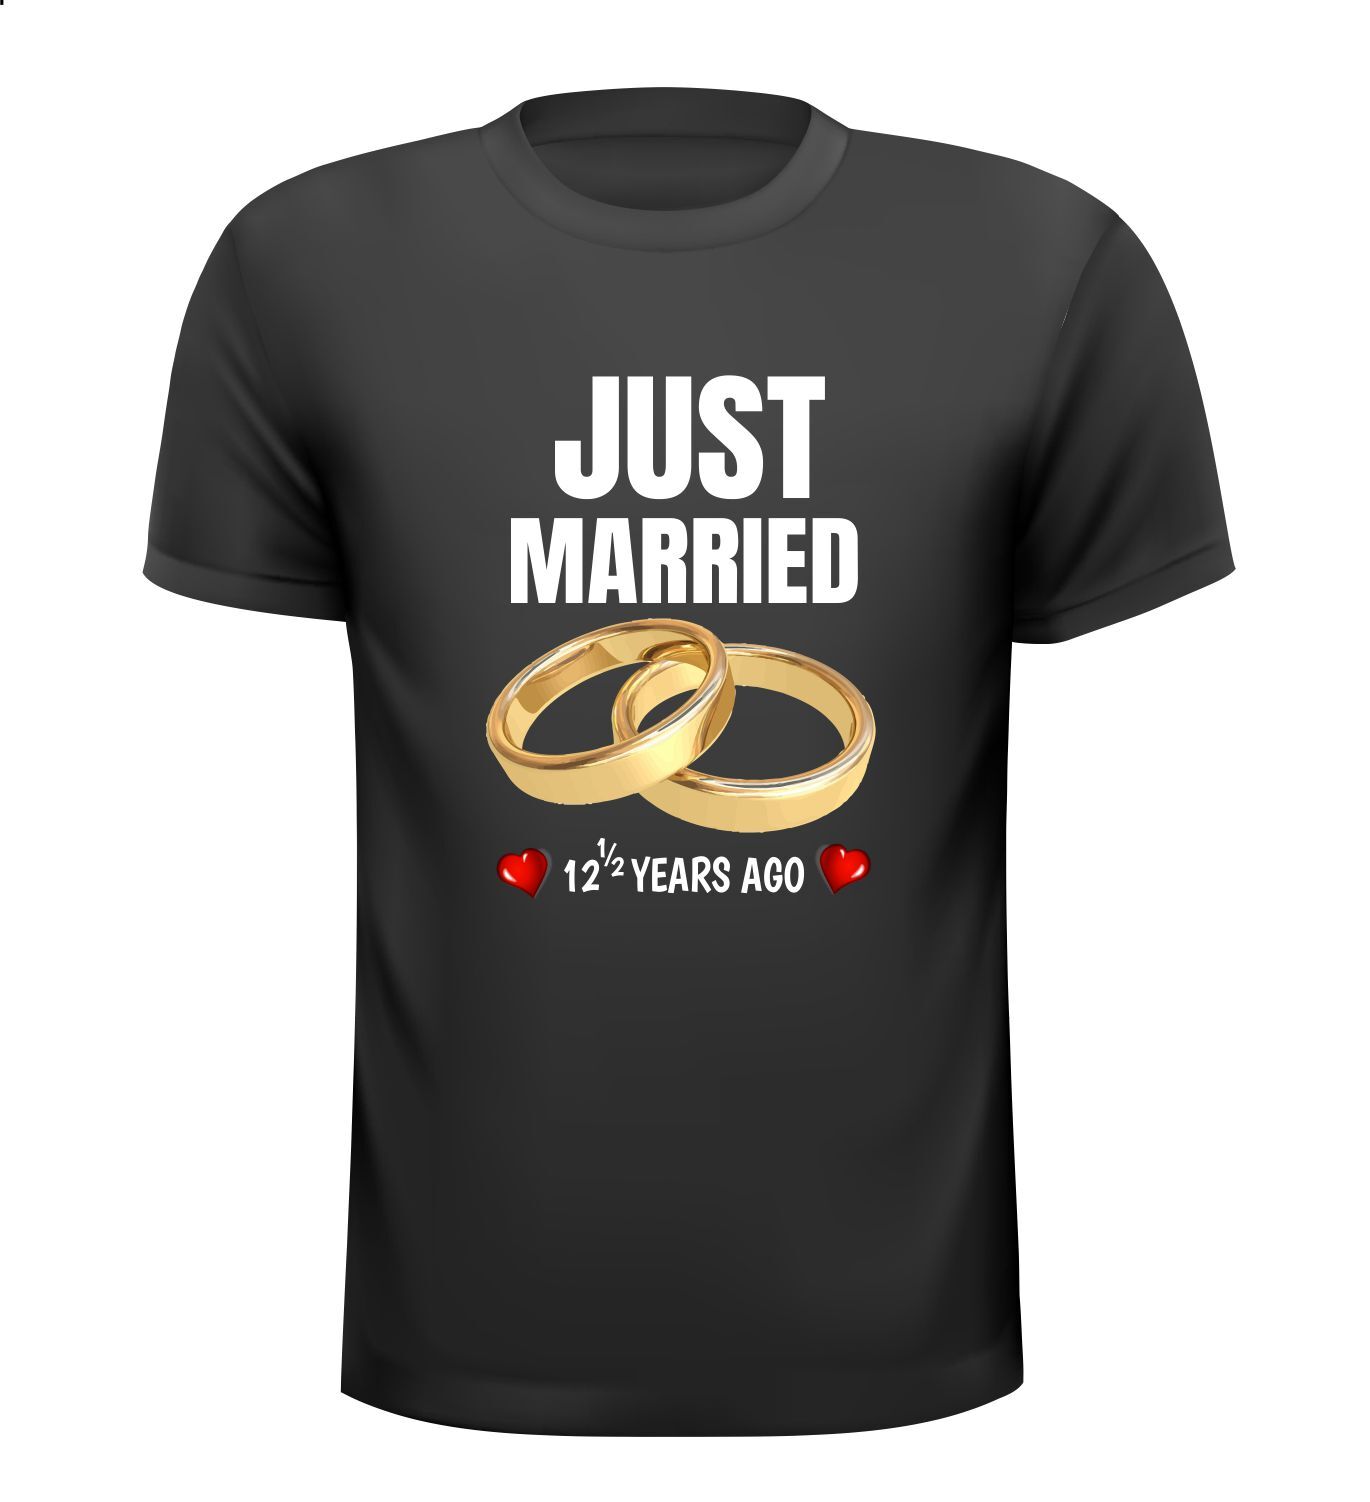 T-shirt Just Married 12 and halve years ago pas getrouwd twaalf en half jaar geleden jaar geleden! 